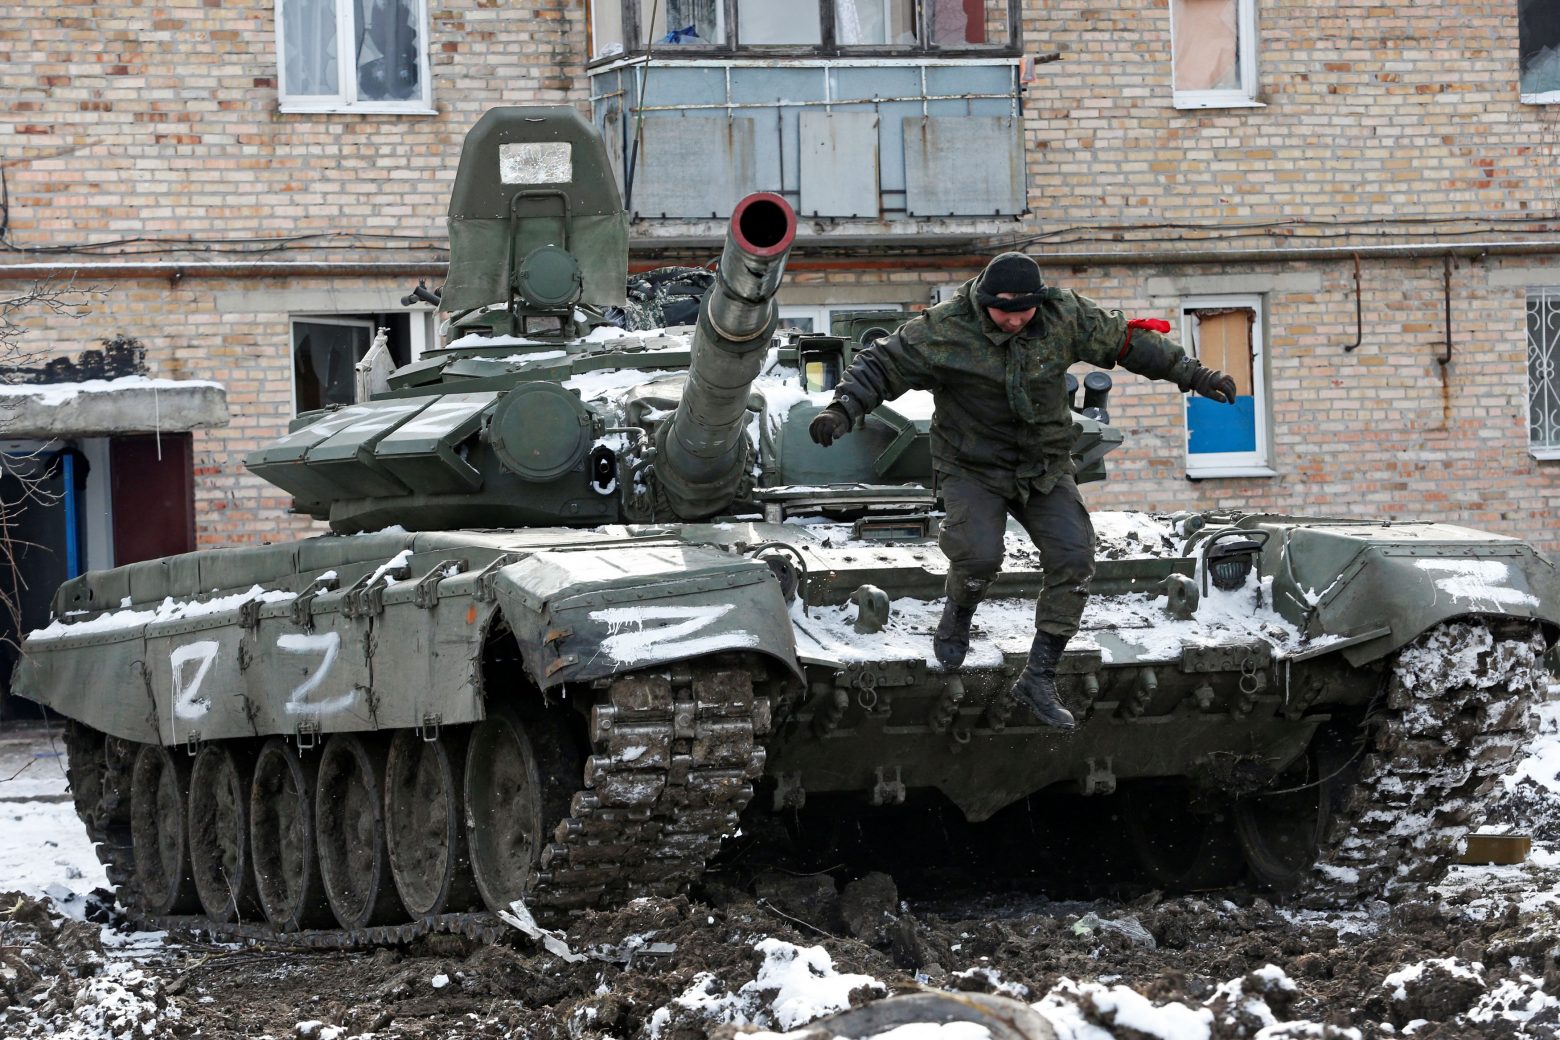 Ουκρανία: Σε δεύτερη φάση περνάει ο πόλεμος λέει η Μόσχα - Τους έχουμε επιφέρει ισχυρά πλήγματα απαντάει το Κίεβο